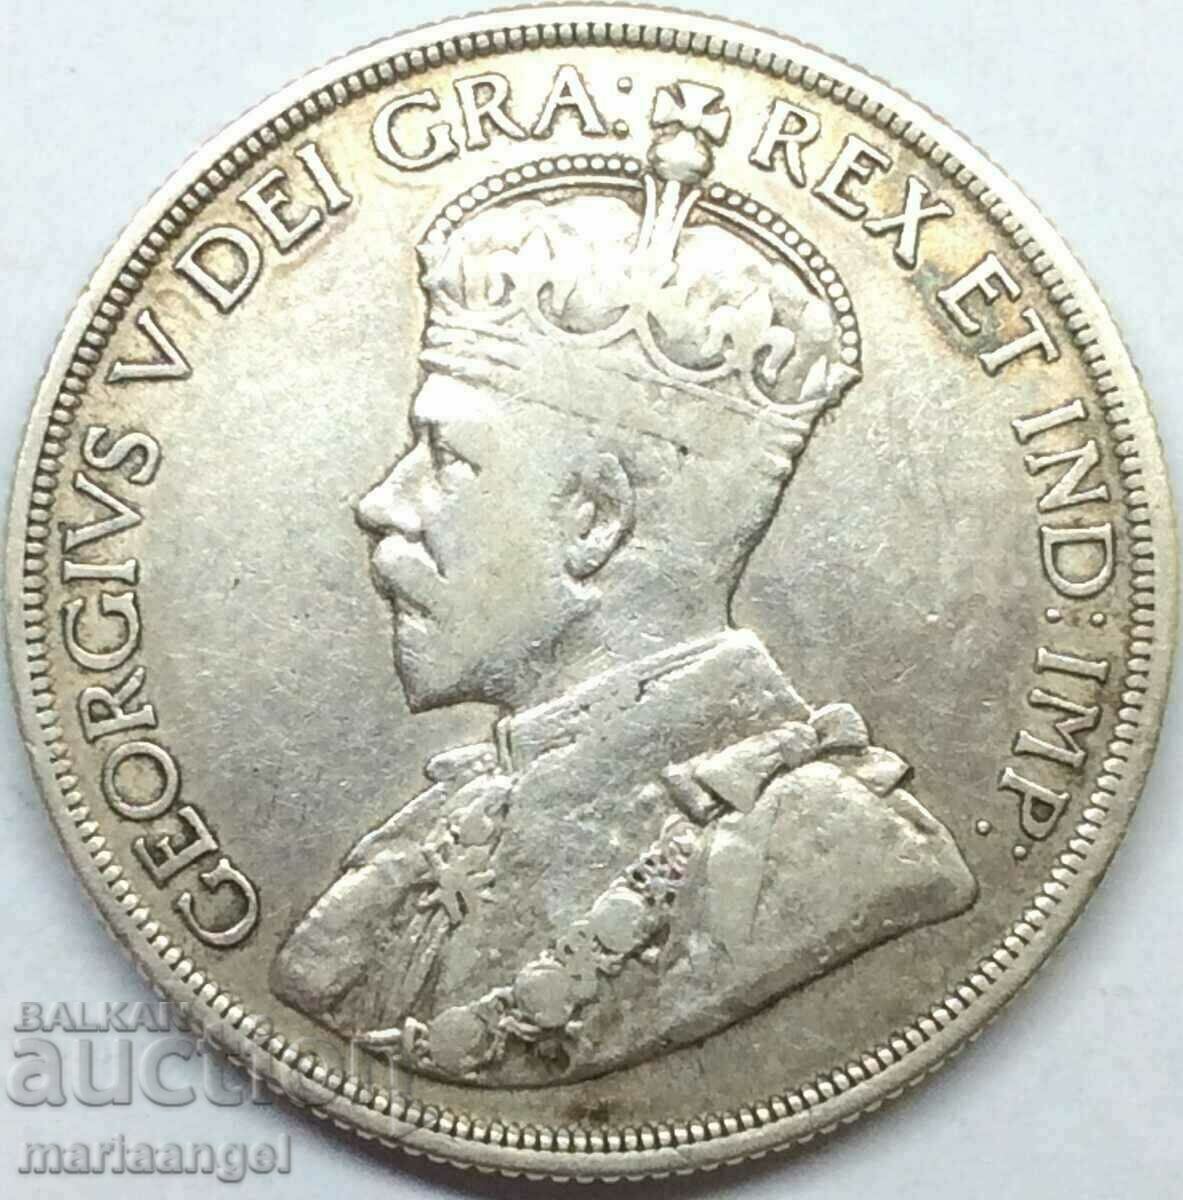 Καναδάς 1 $ 1936 George V Silver